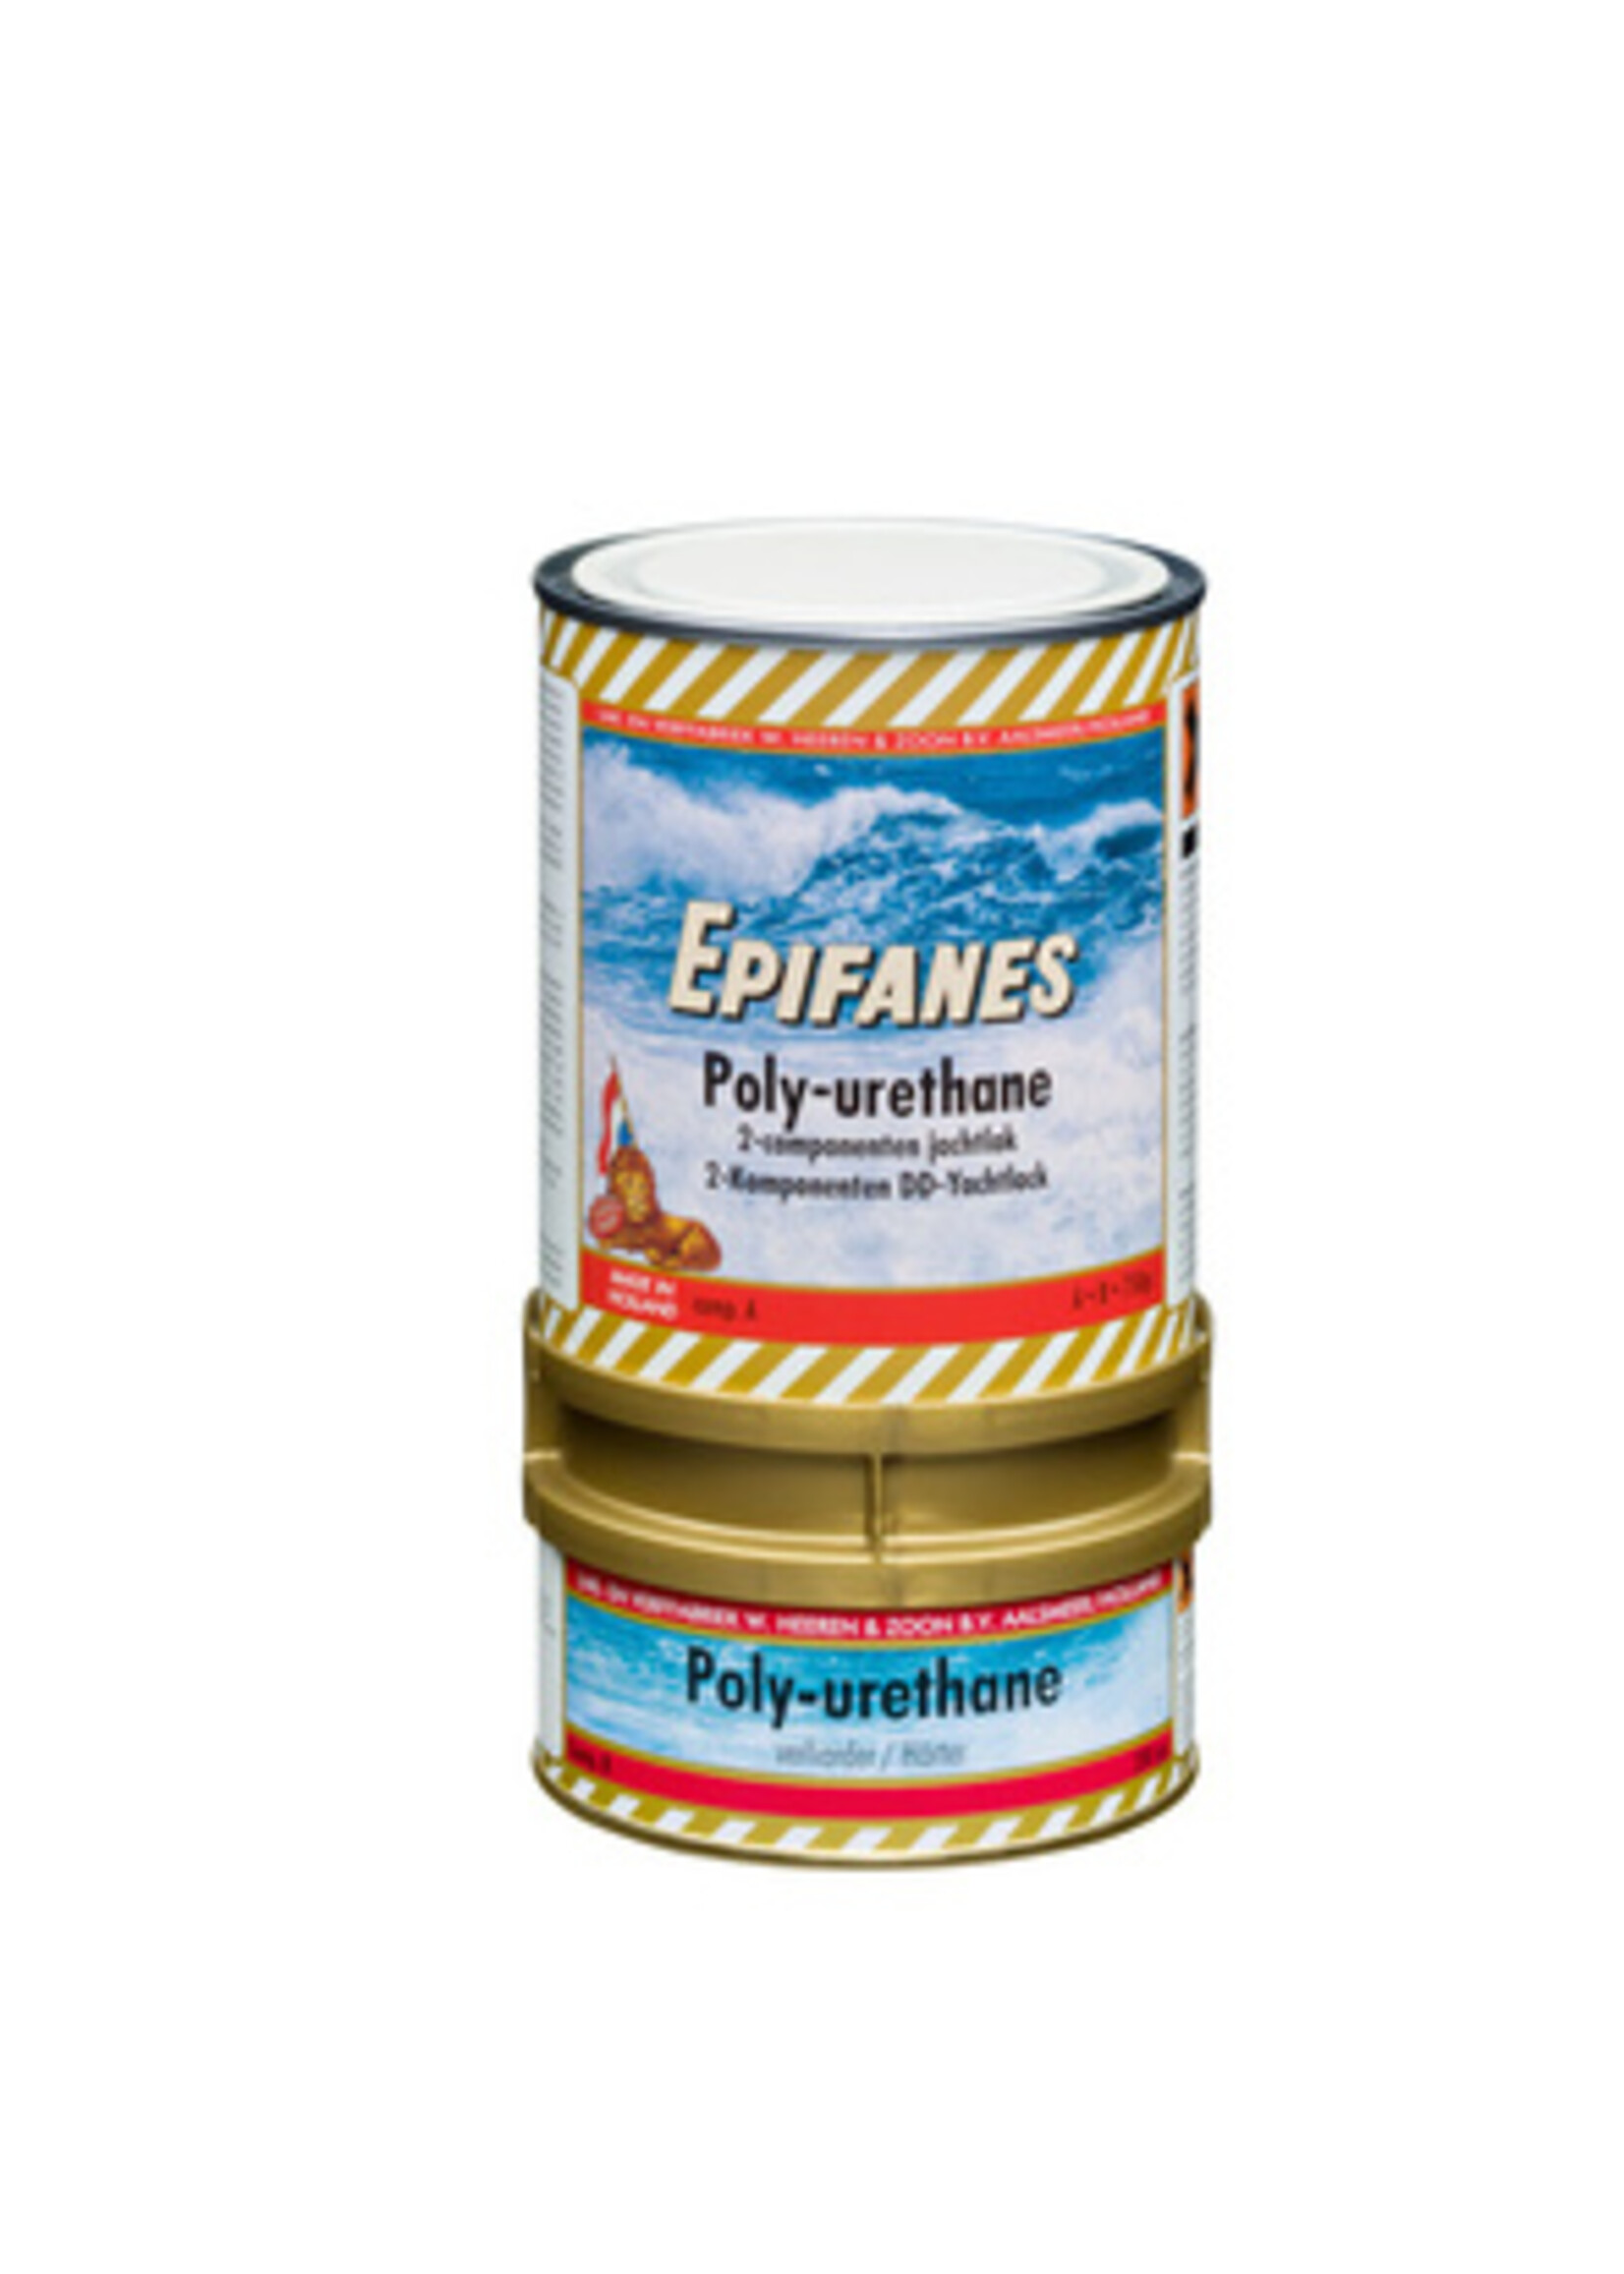 Epifanes Poly-urethane 803 - Creme